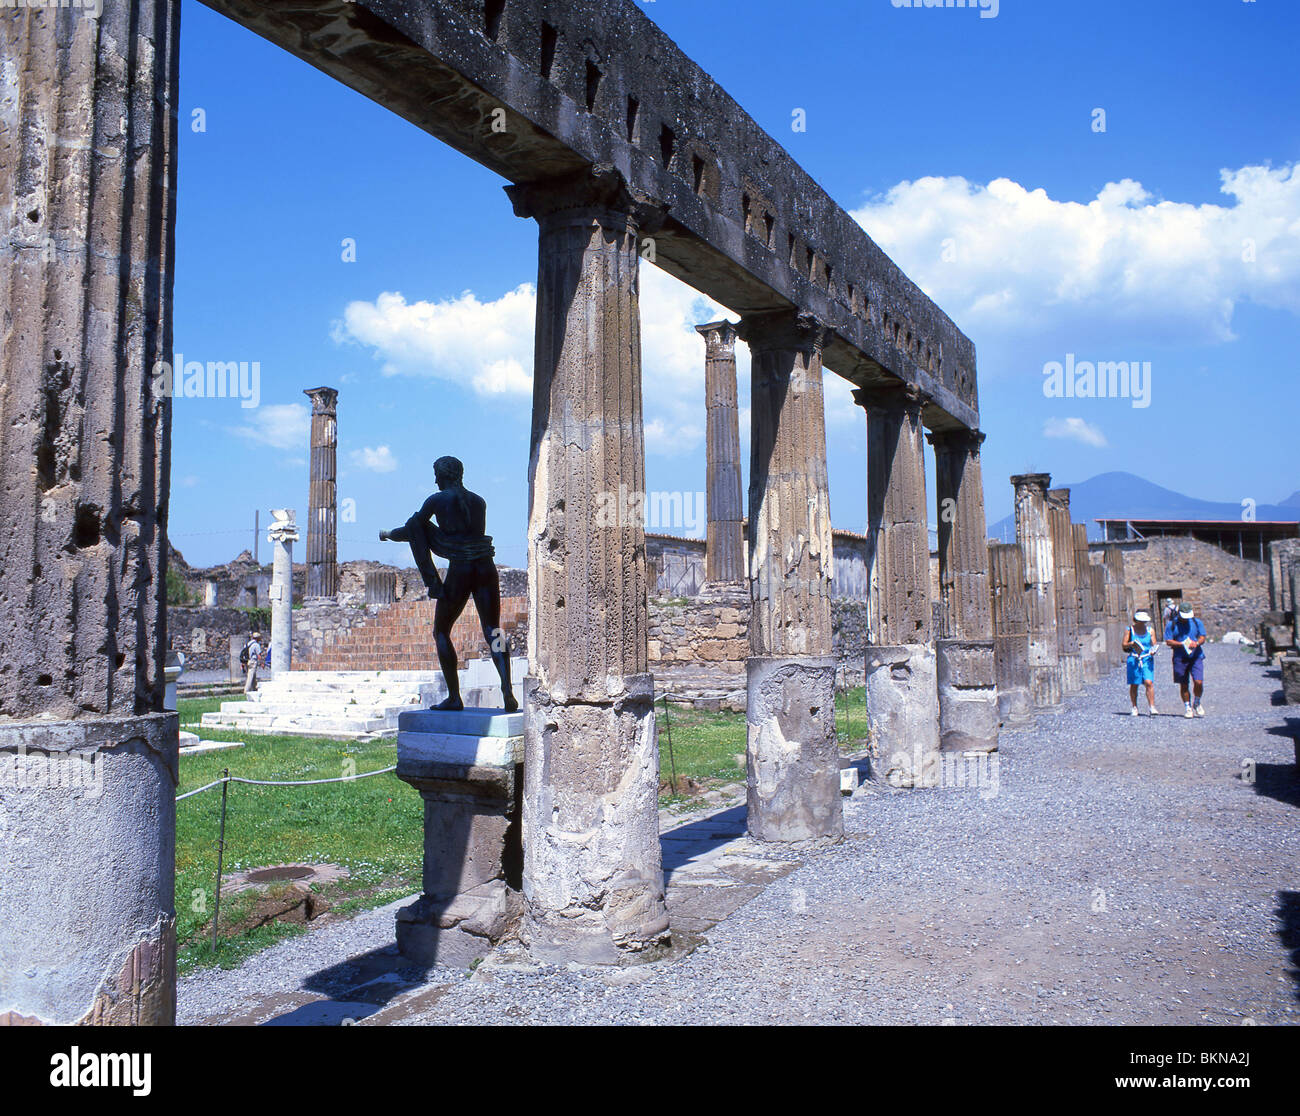 Statue of Apollo and columns, Sanctuary of Apollo, Ancient City of Pompeii, Pompei, Metropolitan City of Naples, Campania Region, Italy Stock Photo